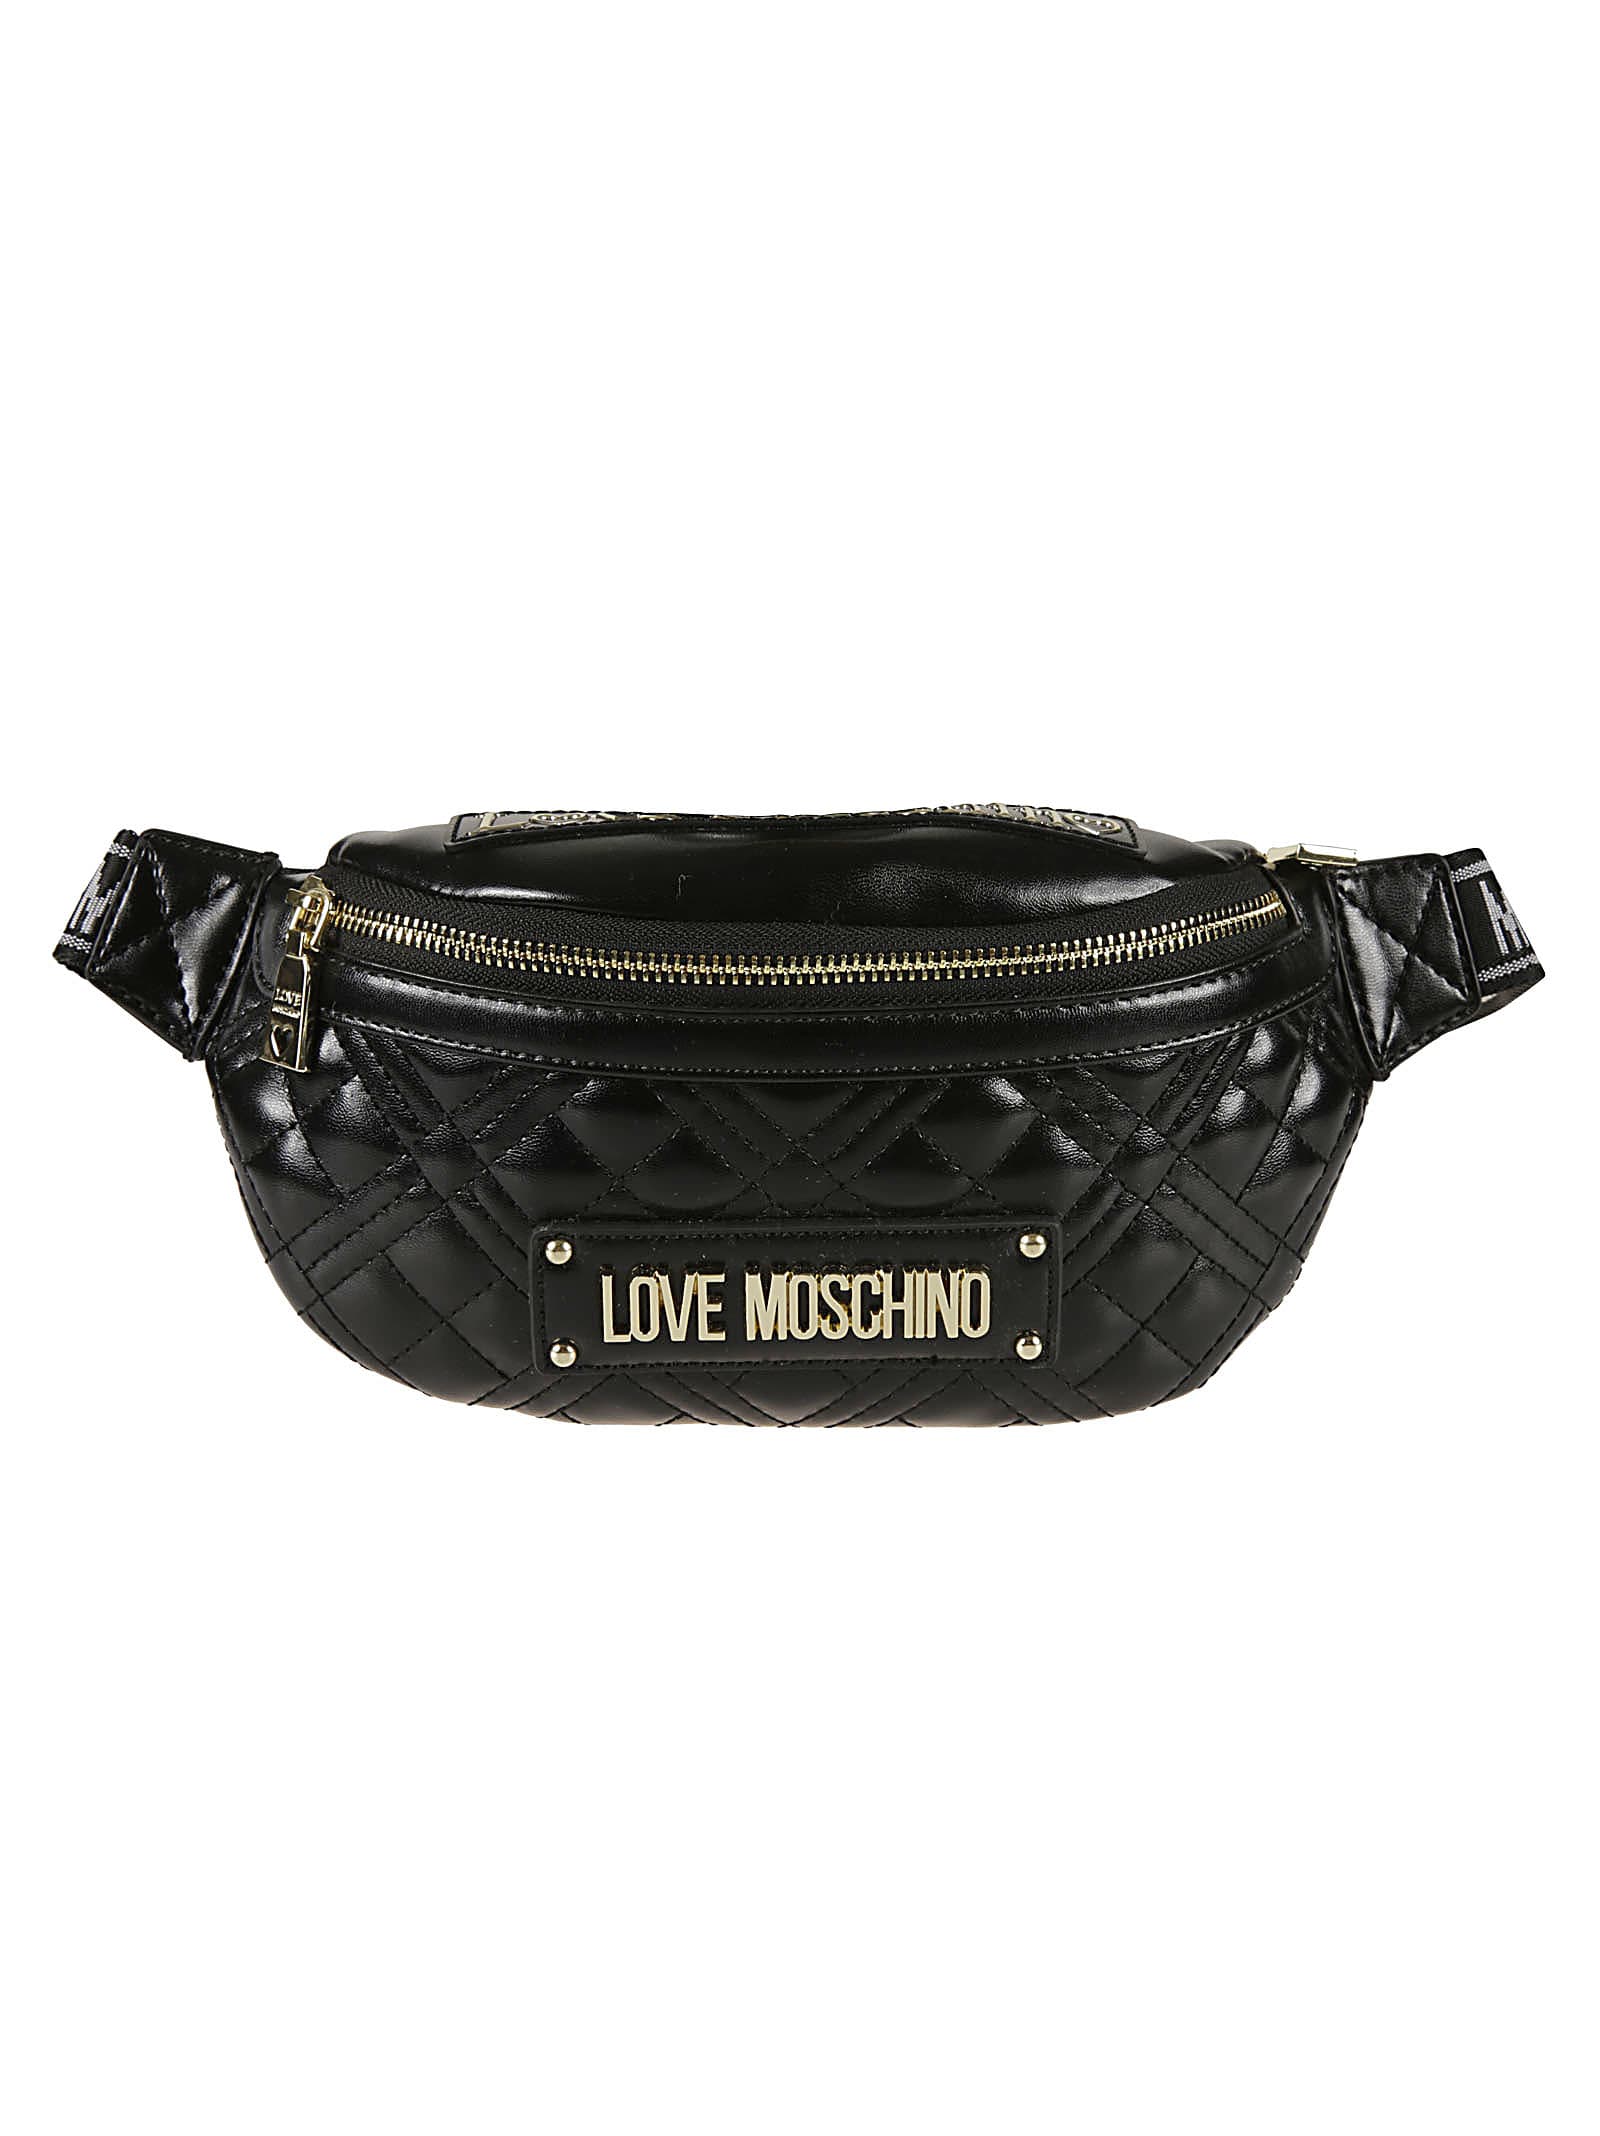 moschino belt bag price